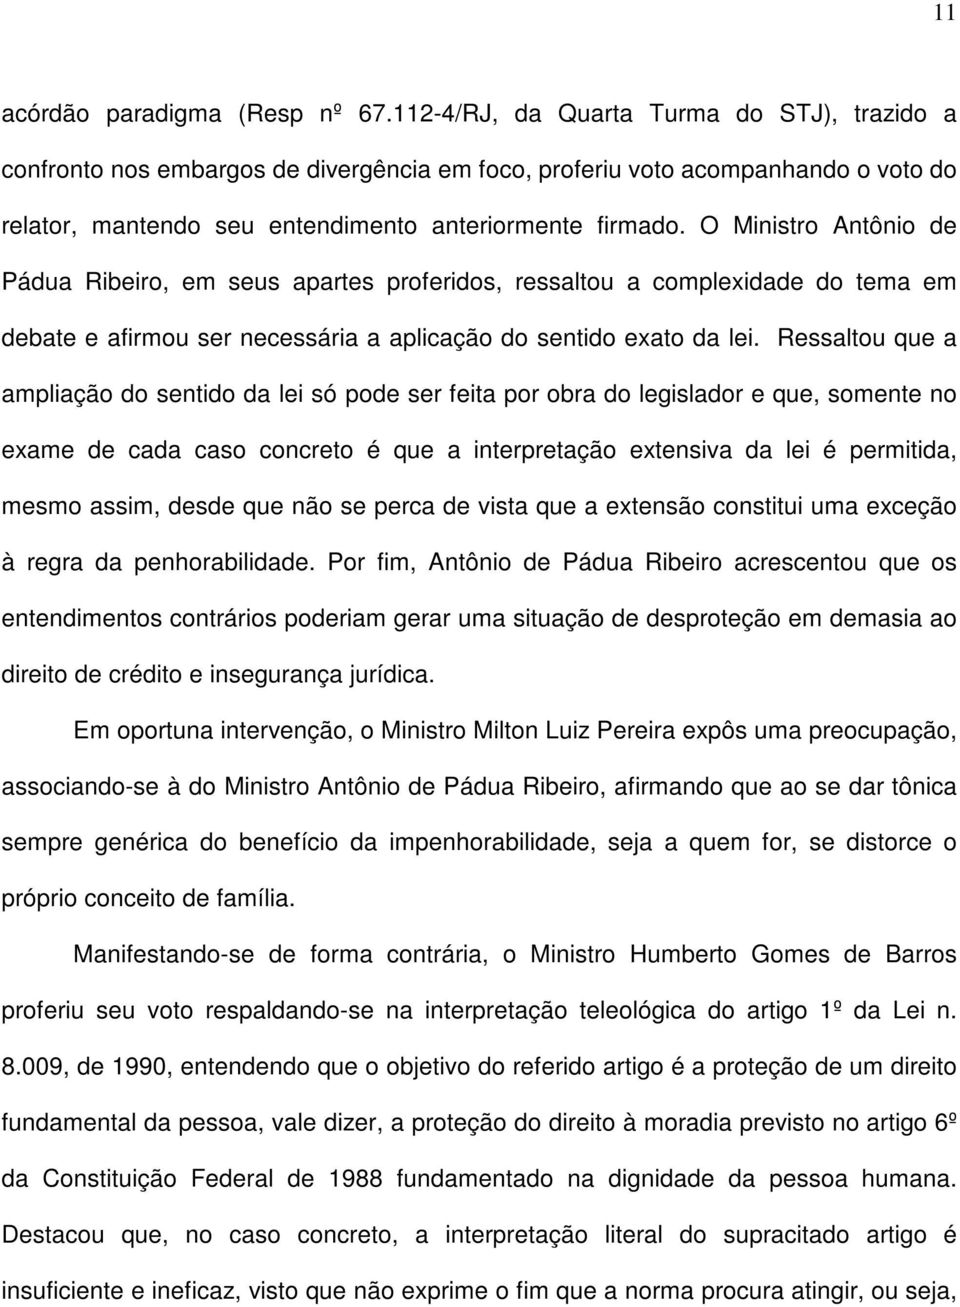 O Ministro Antônio de Pádua Ribeiro, em seus apartes proferidos, ressaltou a complexidade do tema em debate e afirmou ser necessária a aplicação do sentido exato da lei.